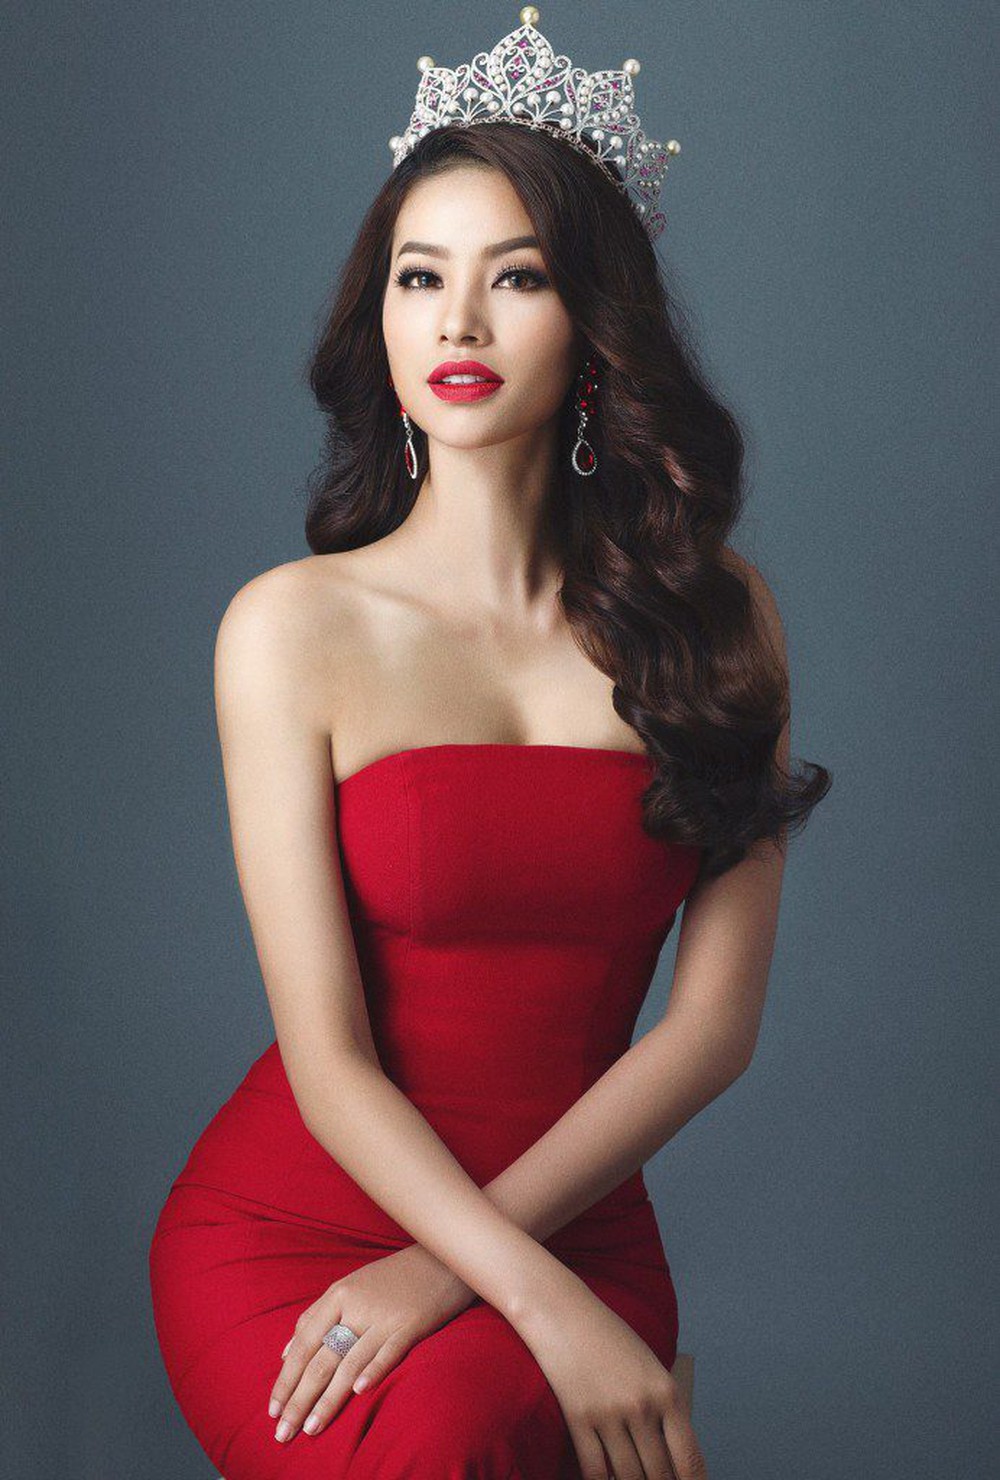 Lý do gì khiến Phạm Hương vẫn mãi là cái tên được nhắc tới nhiều nhất tại Miss Universe Vietnam dù 7 năm đã trôi qua - Ảnh 3.